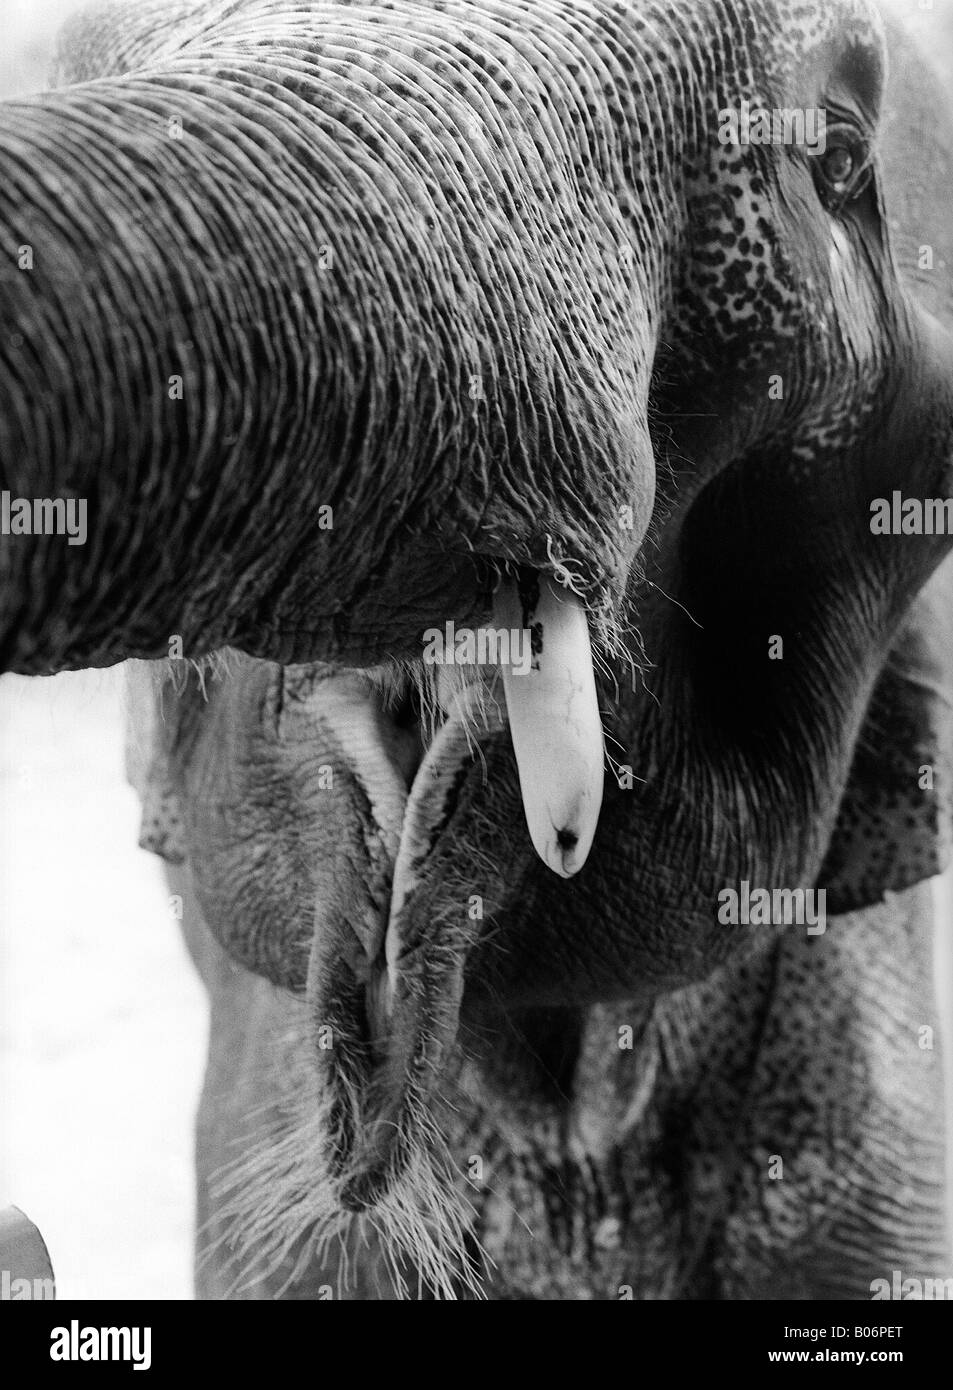 An elephant face Stock Photo